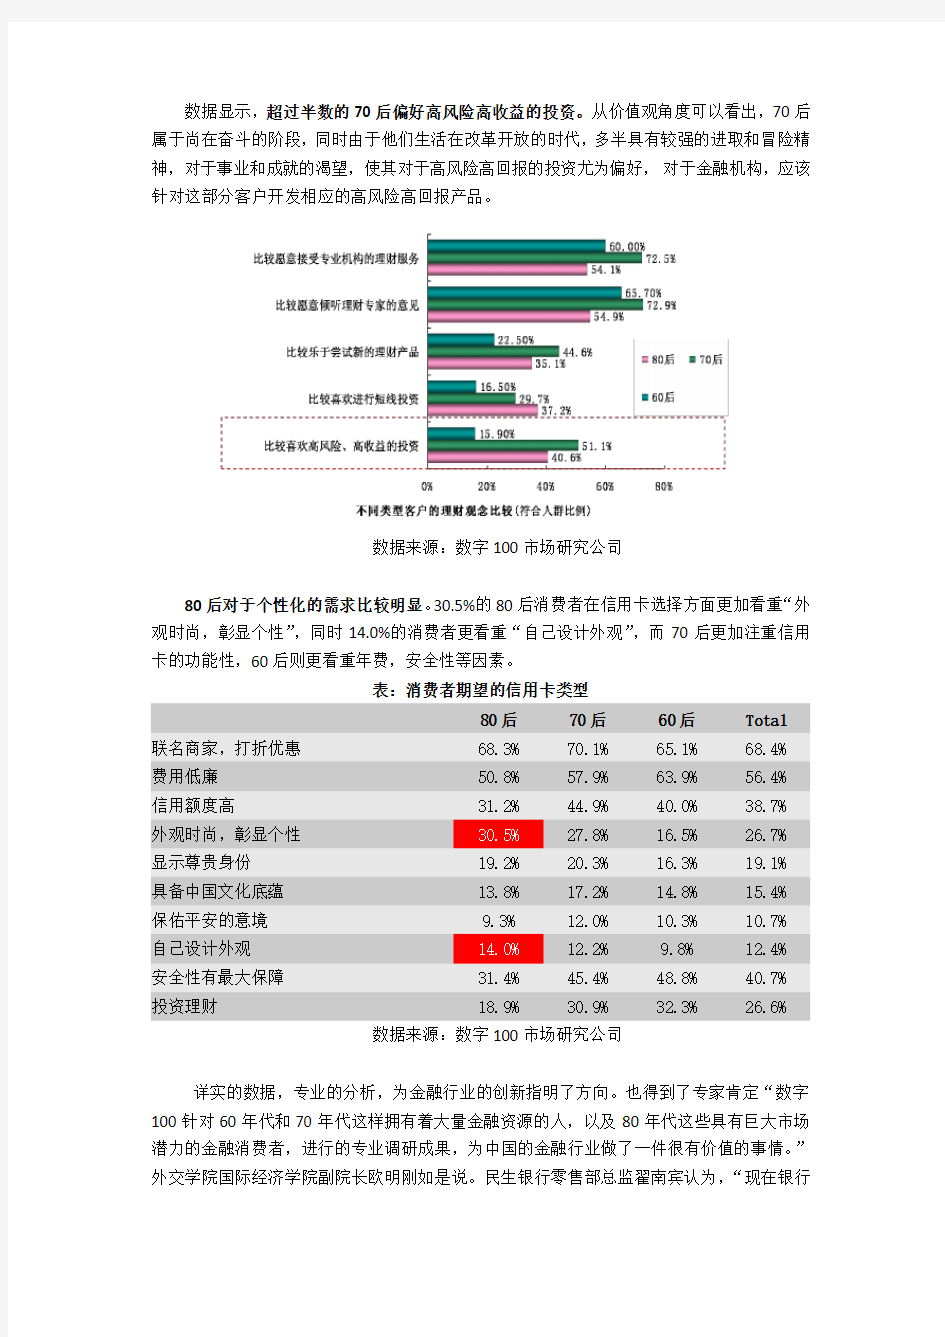 中国城市居民金融消费情态与趋势的调查报告